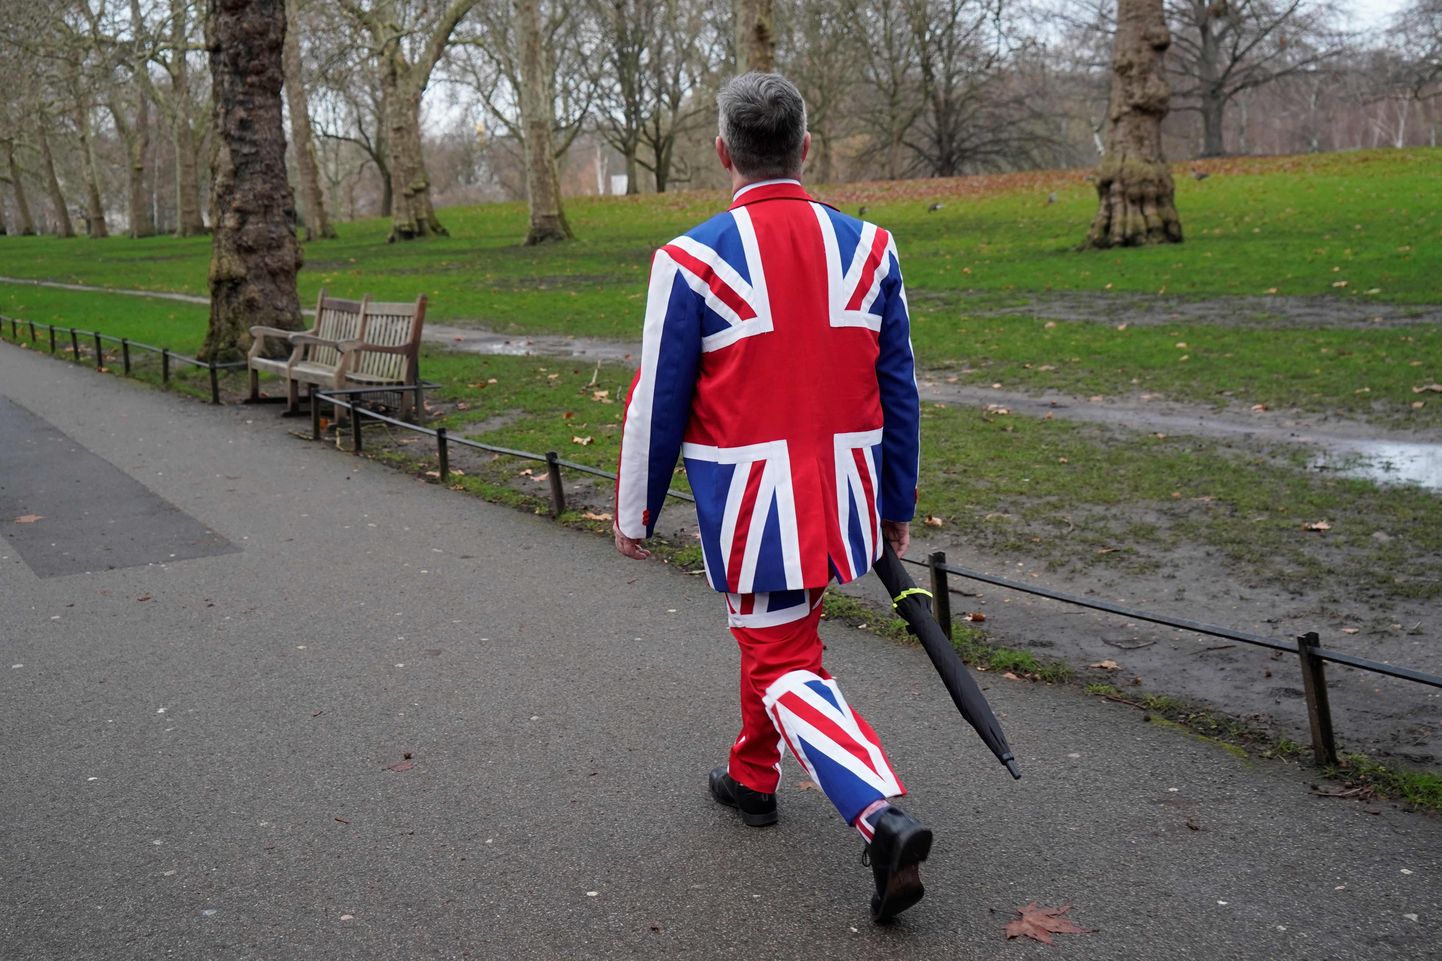 Ühendkuningriigi lipu mustris ülikonnaga mees jalutamas täna hommikul Londonis.